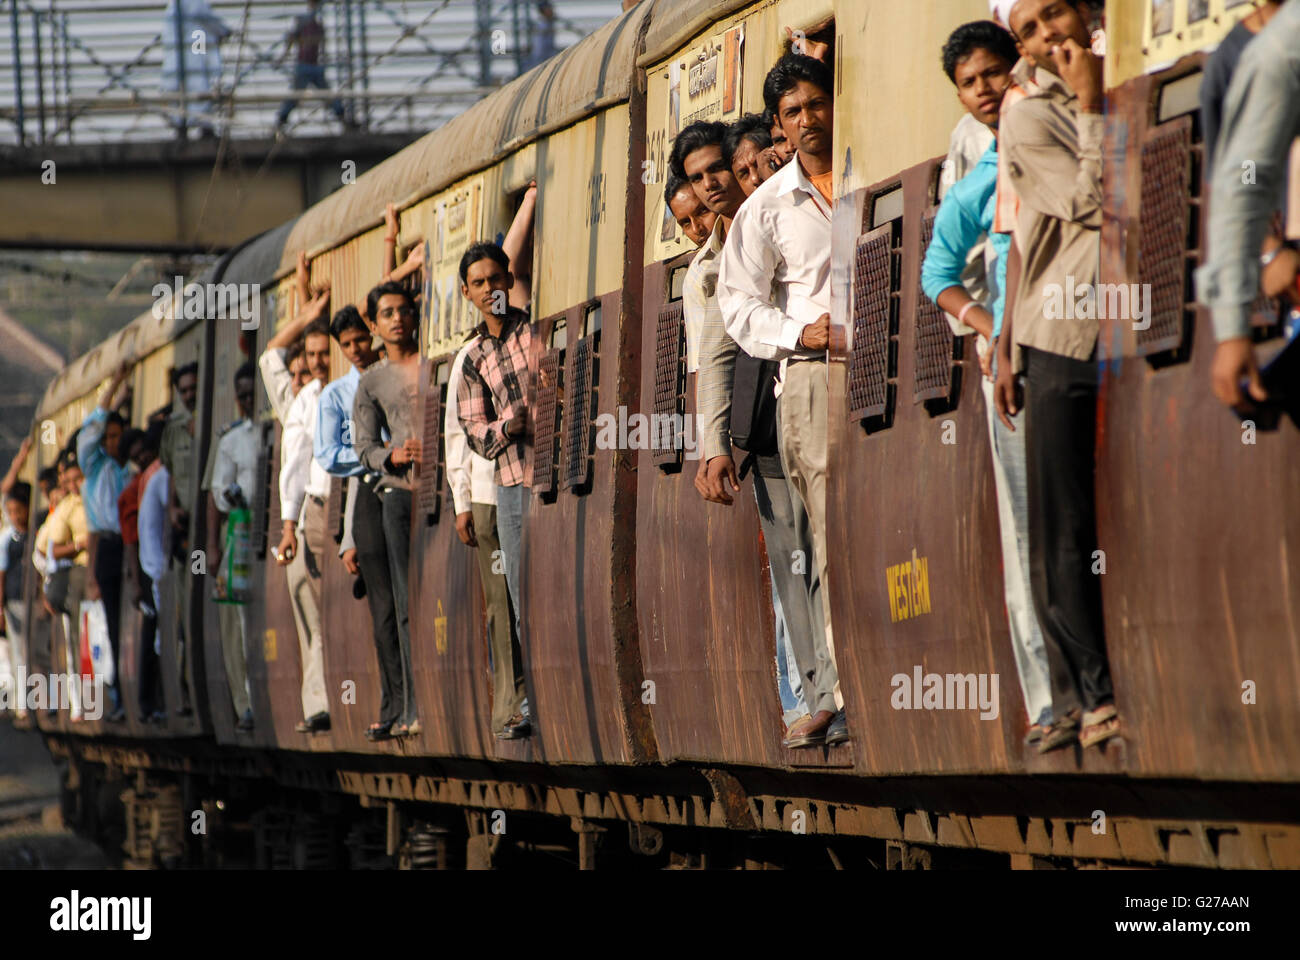 Indien-Mumbai-Bombay Pendler in überfüllten s-Bahn der westlichen Eisenbahnen in Bandra Station / INDIEN Bombay Mumbai Das Wirtschaftszentrum Und Finanzzentrum Indiens, Zugmitte in Überfuellten S-Bahn Zuegen der Western Railways in Bandra Stockfoto